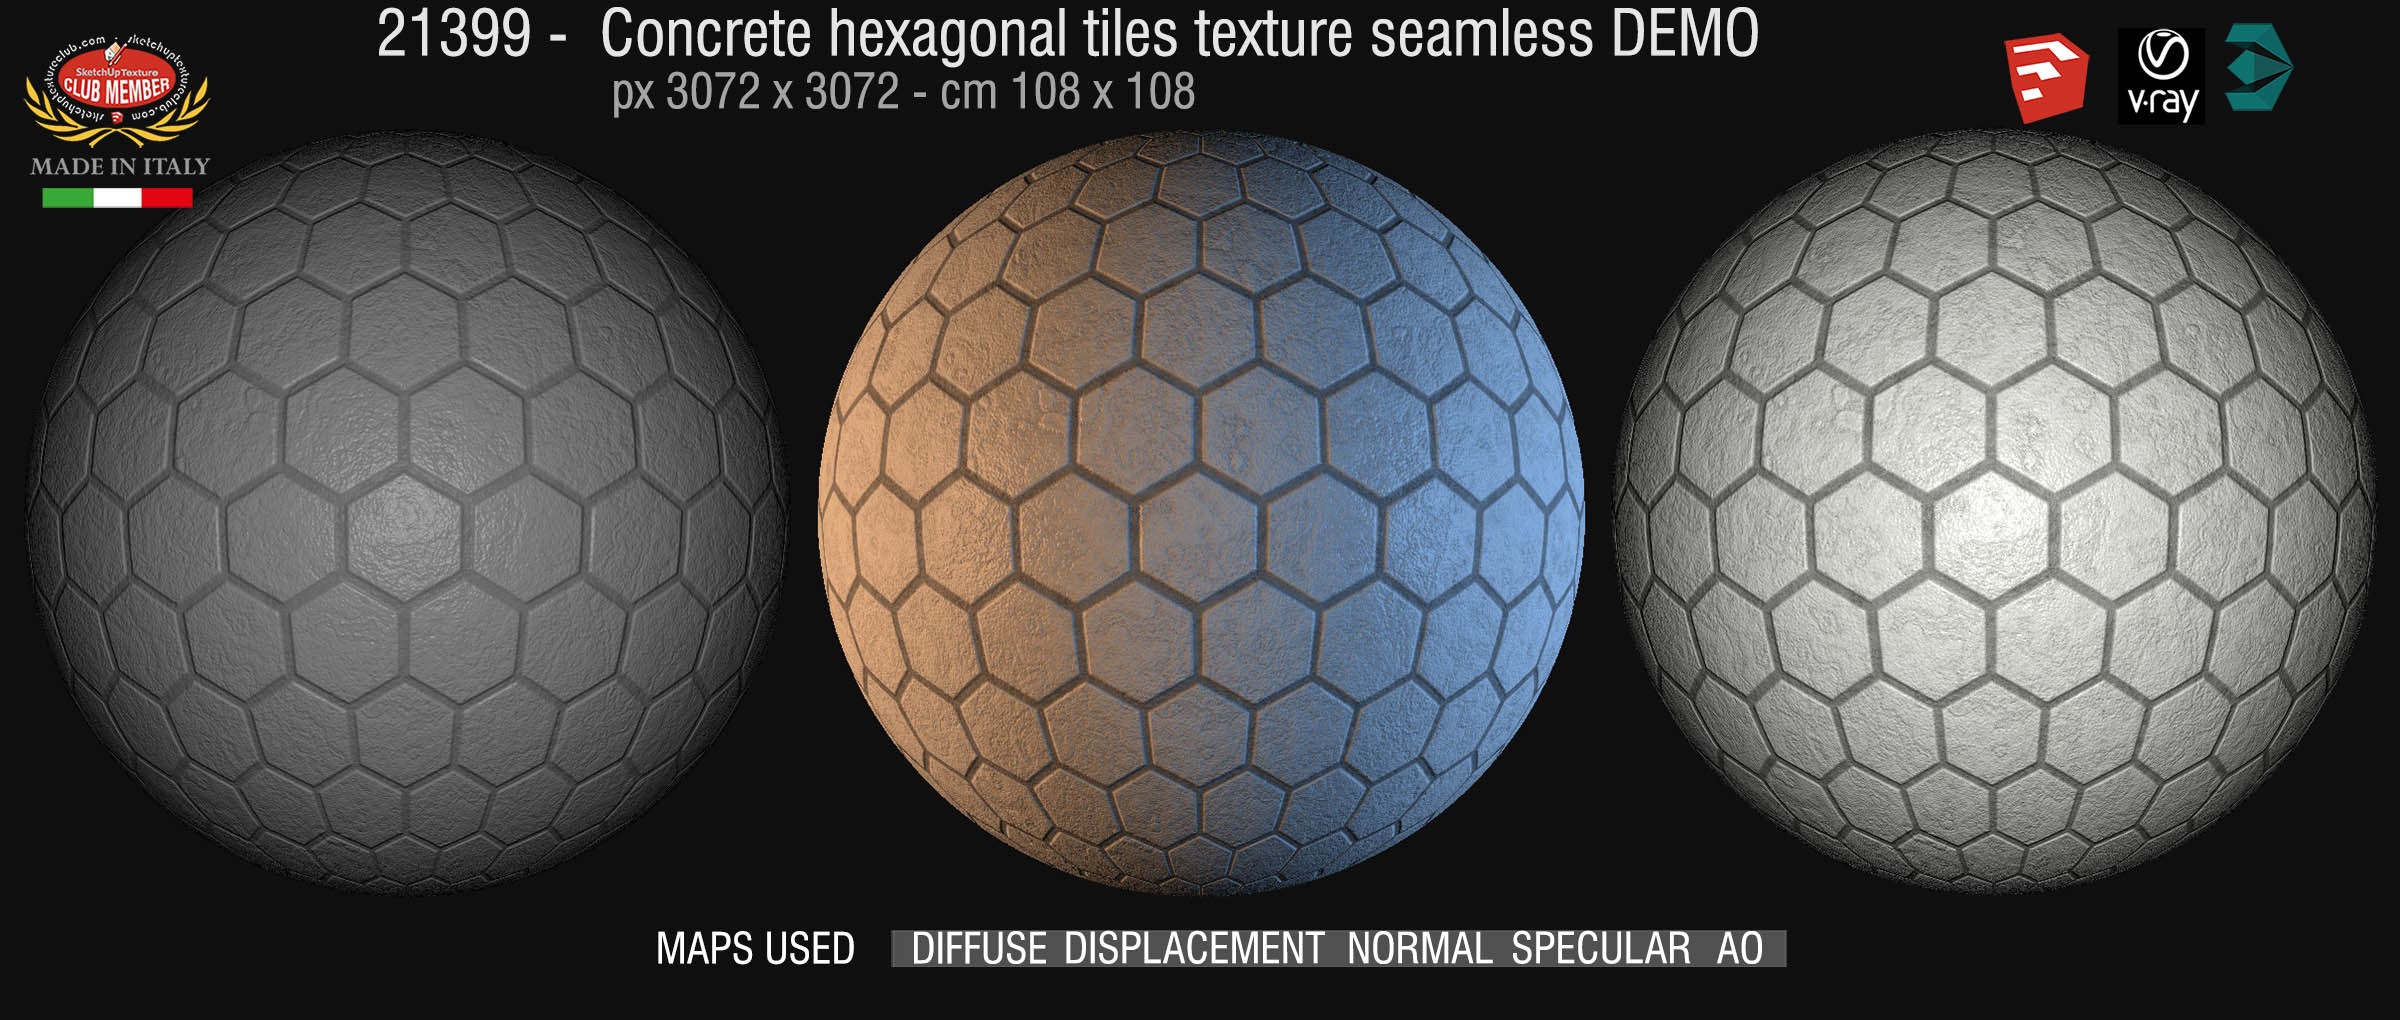 21399 concrete hexagonal tile texture seamless + maps DEMO